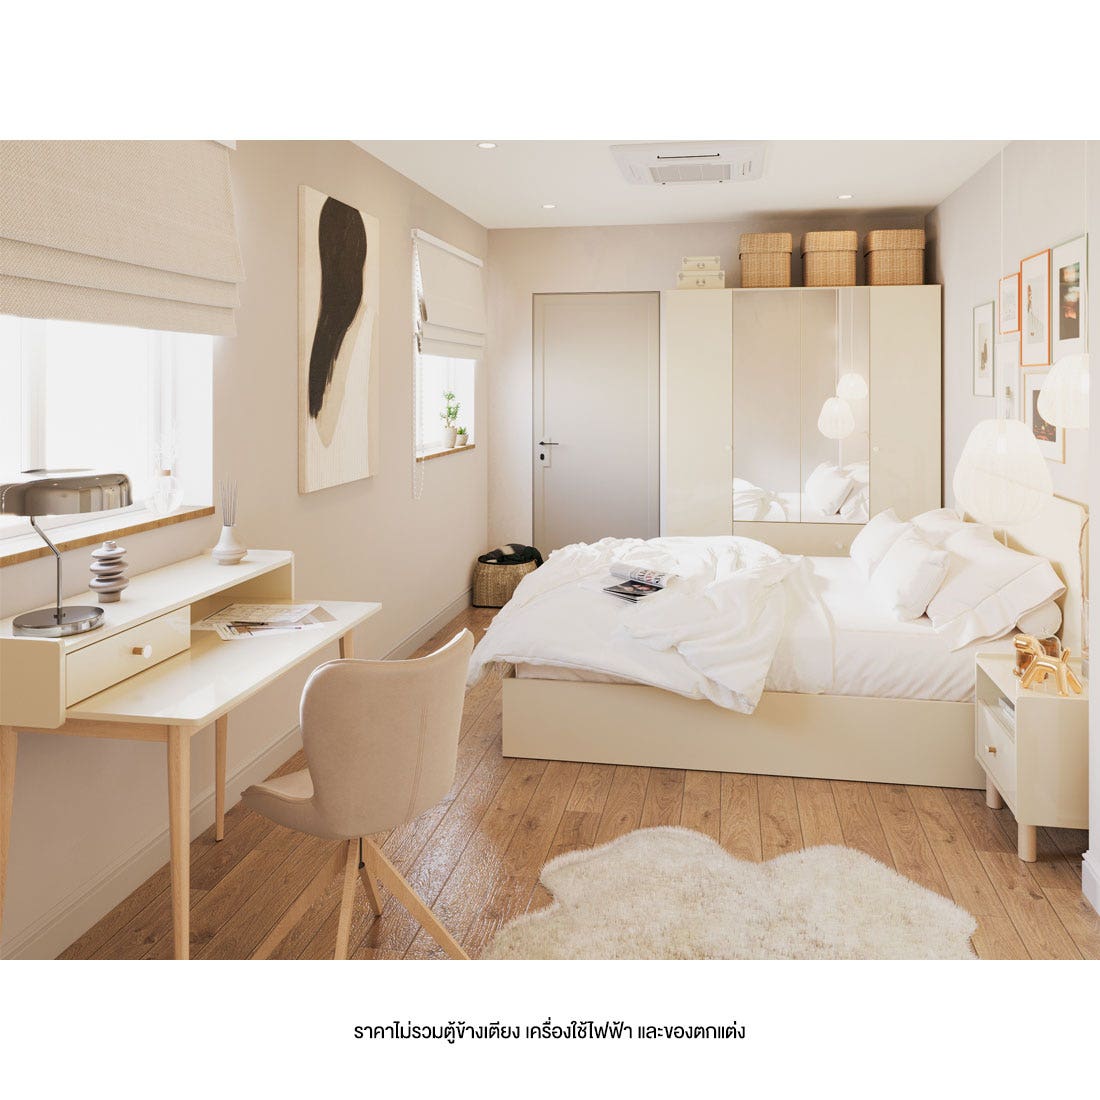 ชุดห้องนอน 5 ฟุต รุ่น Blanca สีครีม มิดกรอส01